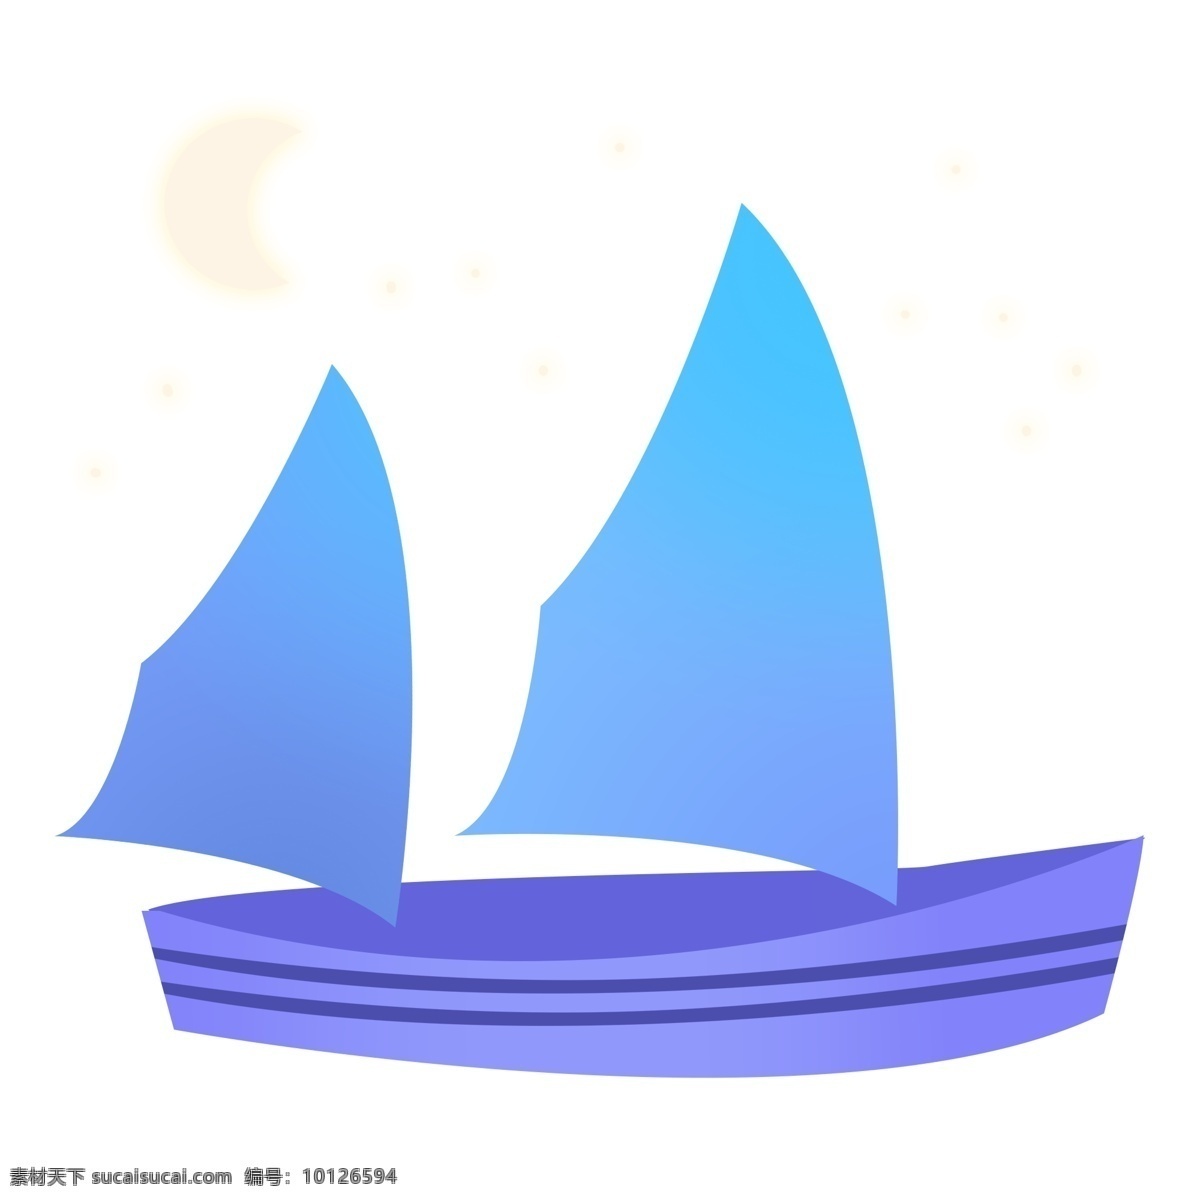 可爱 卡通 手绘 帆船 平面 一帆风顺 吉祥 祝福 碧海 蓝天 乘船 船帆 水上设施 交通工具 旗子